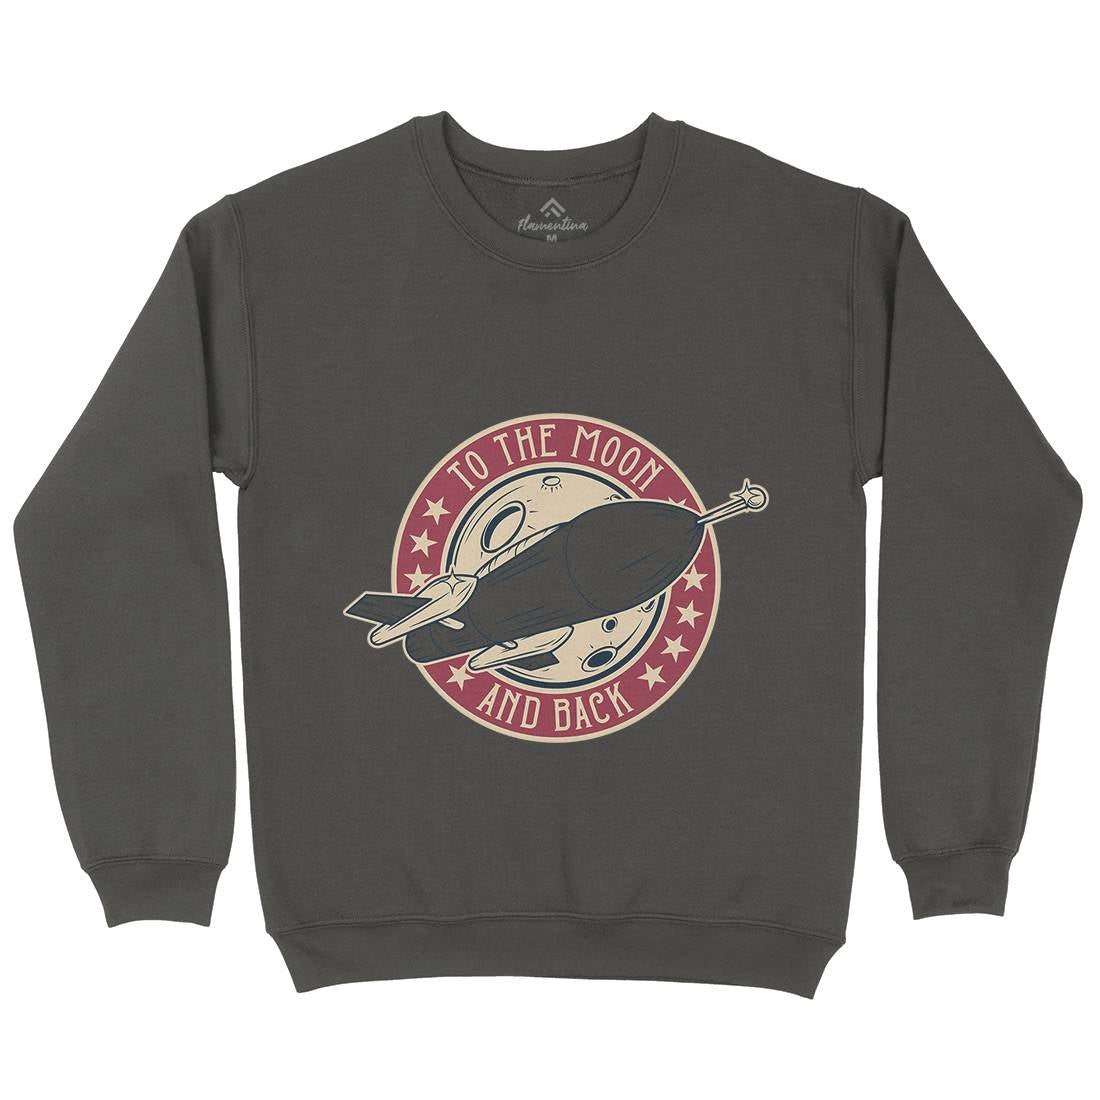 To The Moon Kids Crew Neck Sweatshirt Space D993